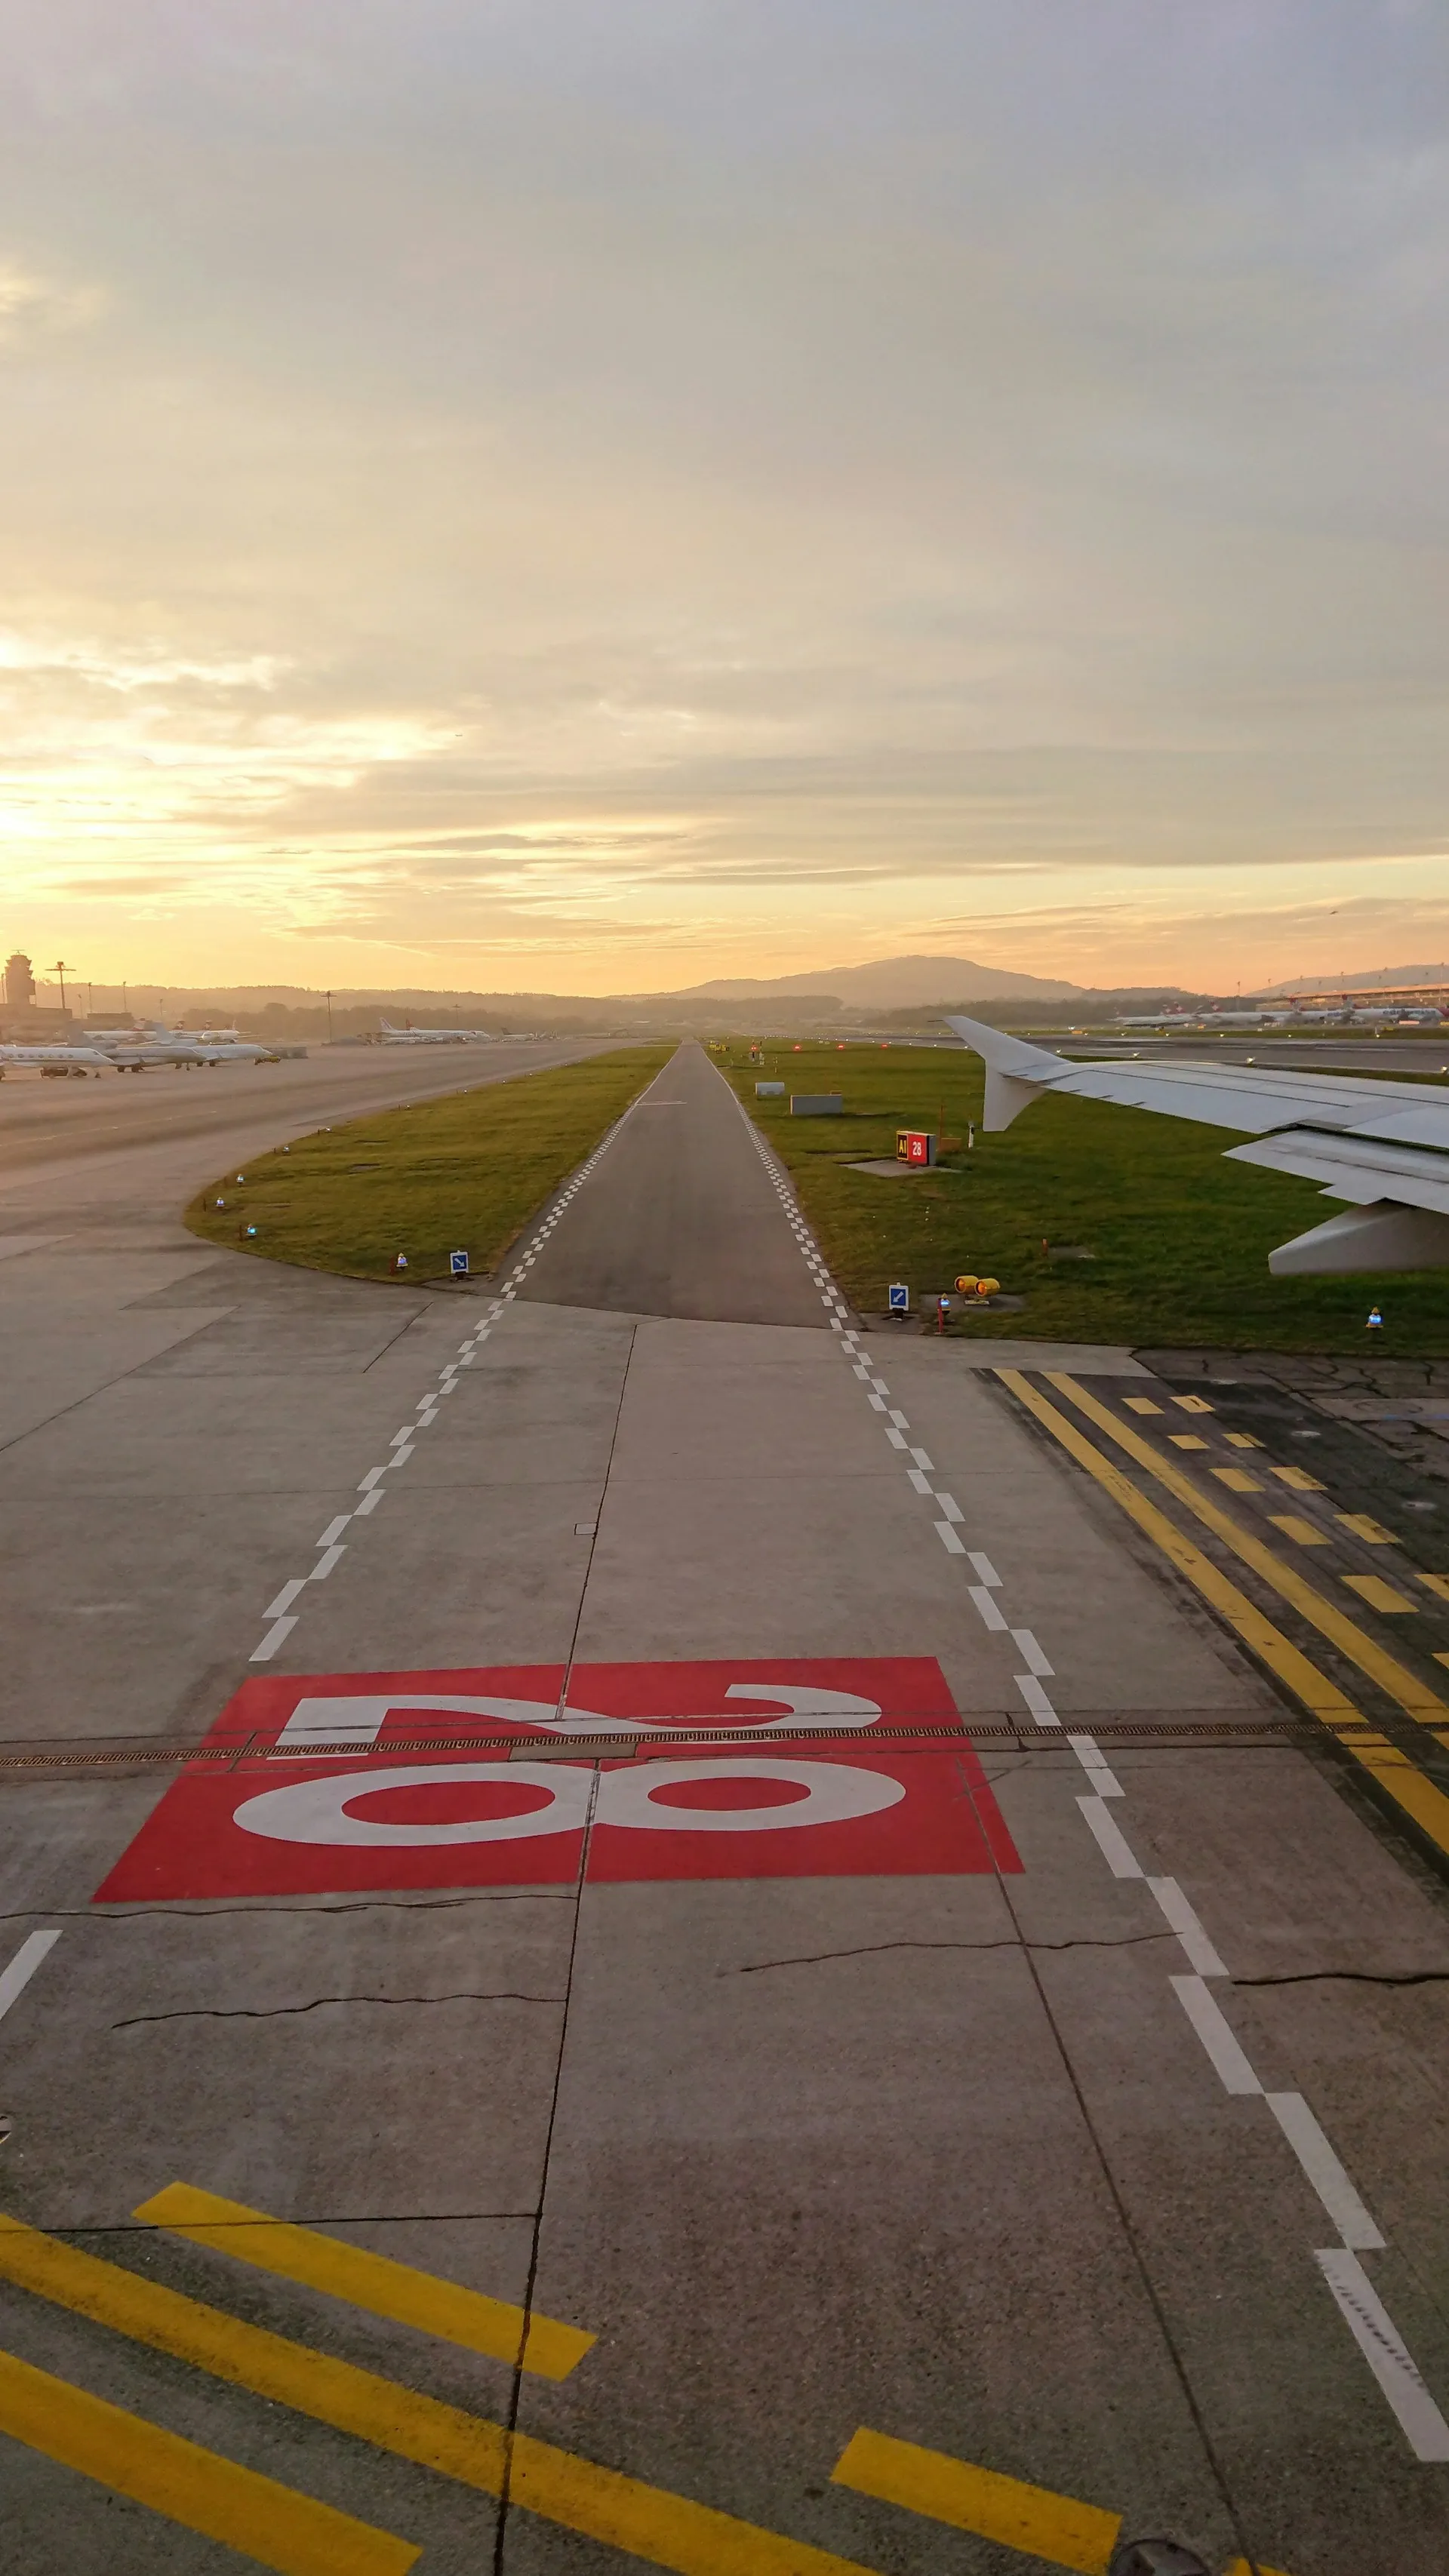 an airport runway